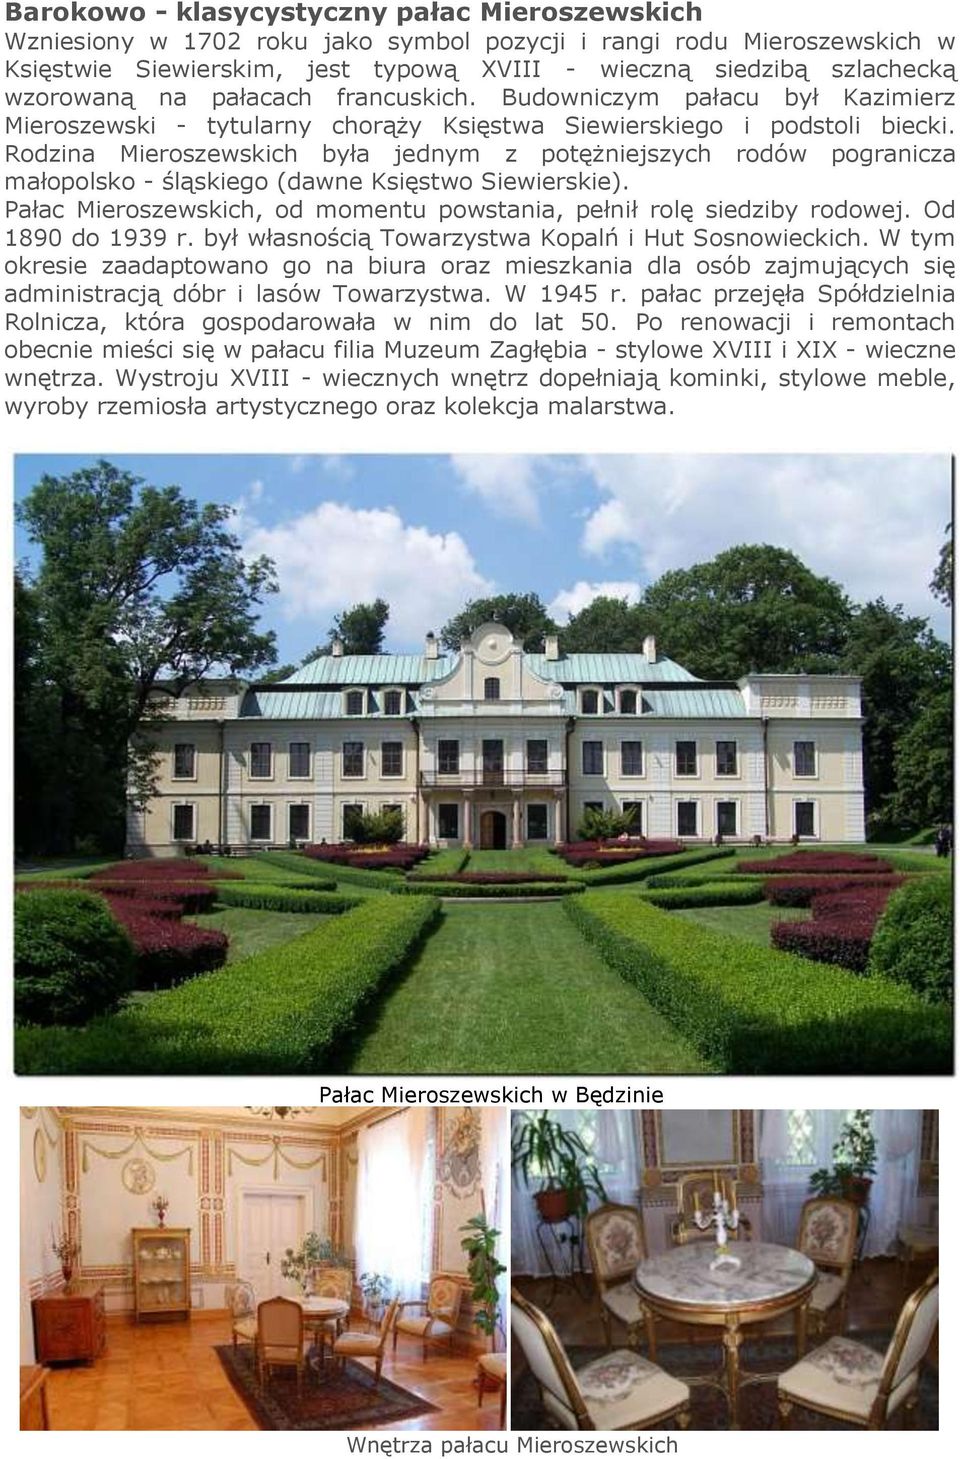 Rodzina Mieroszewskich była jednym z potężniejszych rodów pogranicza małopolsko - śląskiego (dawne Księstwo Siewierskie). Pałac Mieroszewskich, od momentu powstania, pełnił rolę siedziby rodowej.